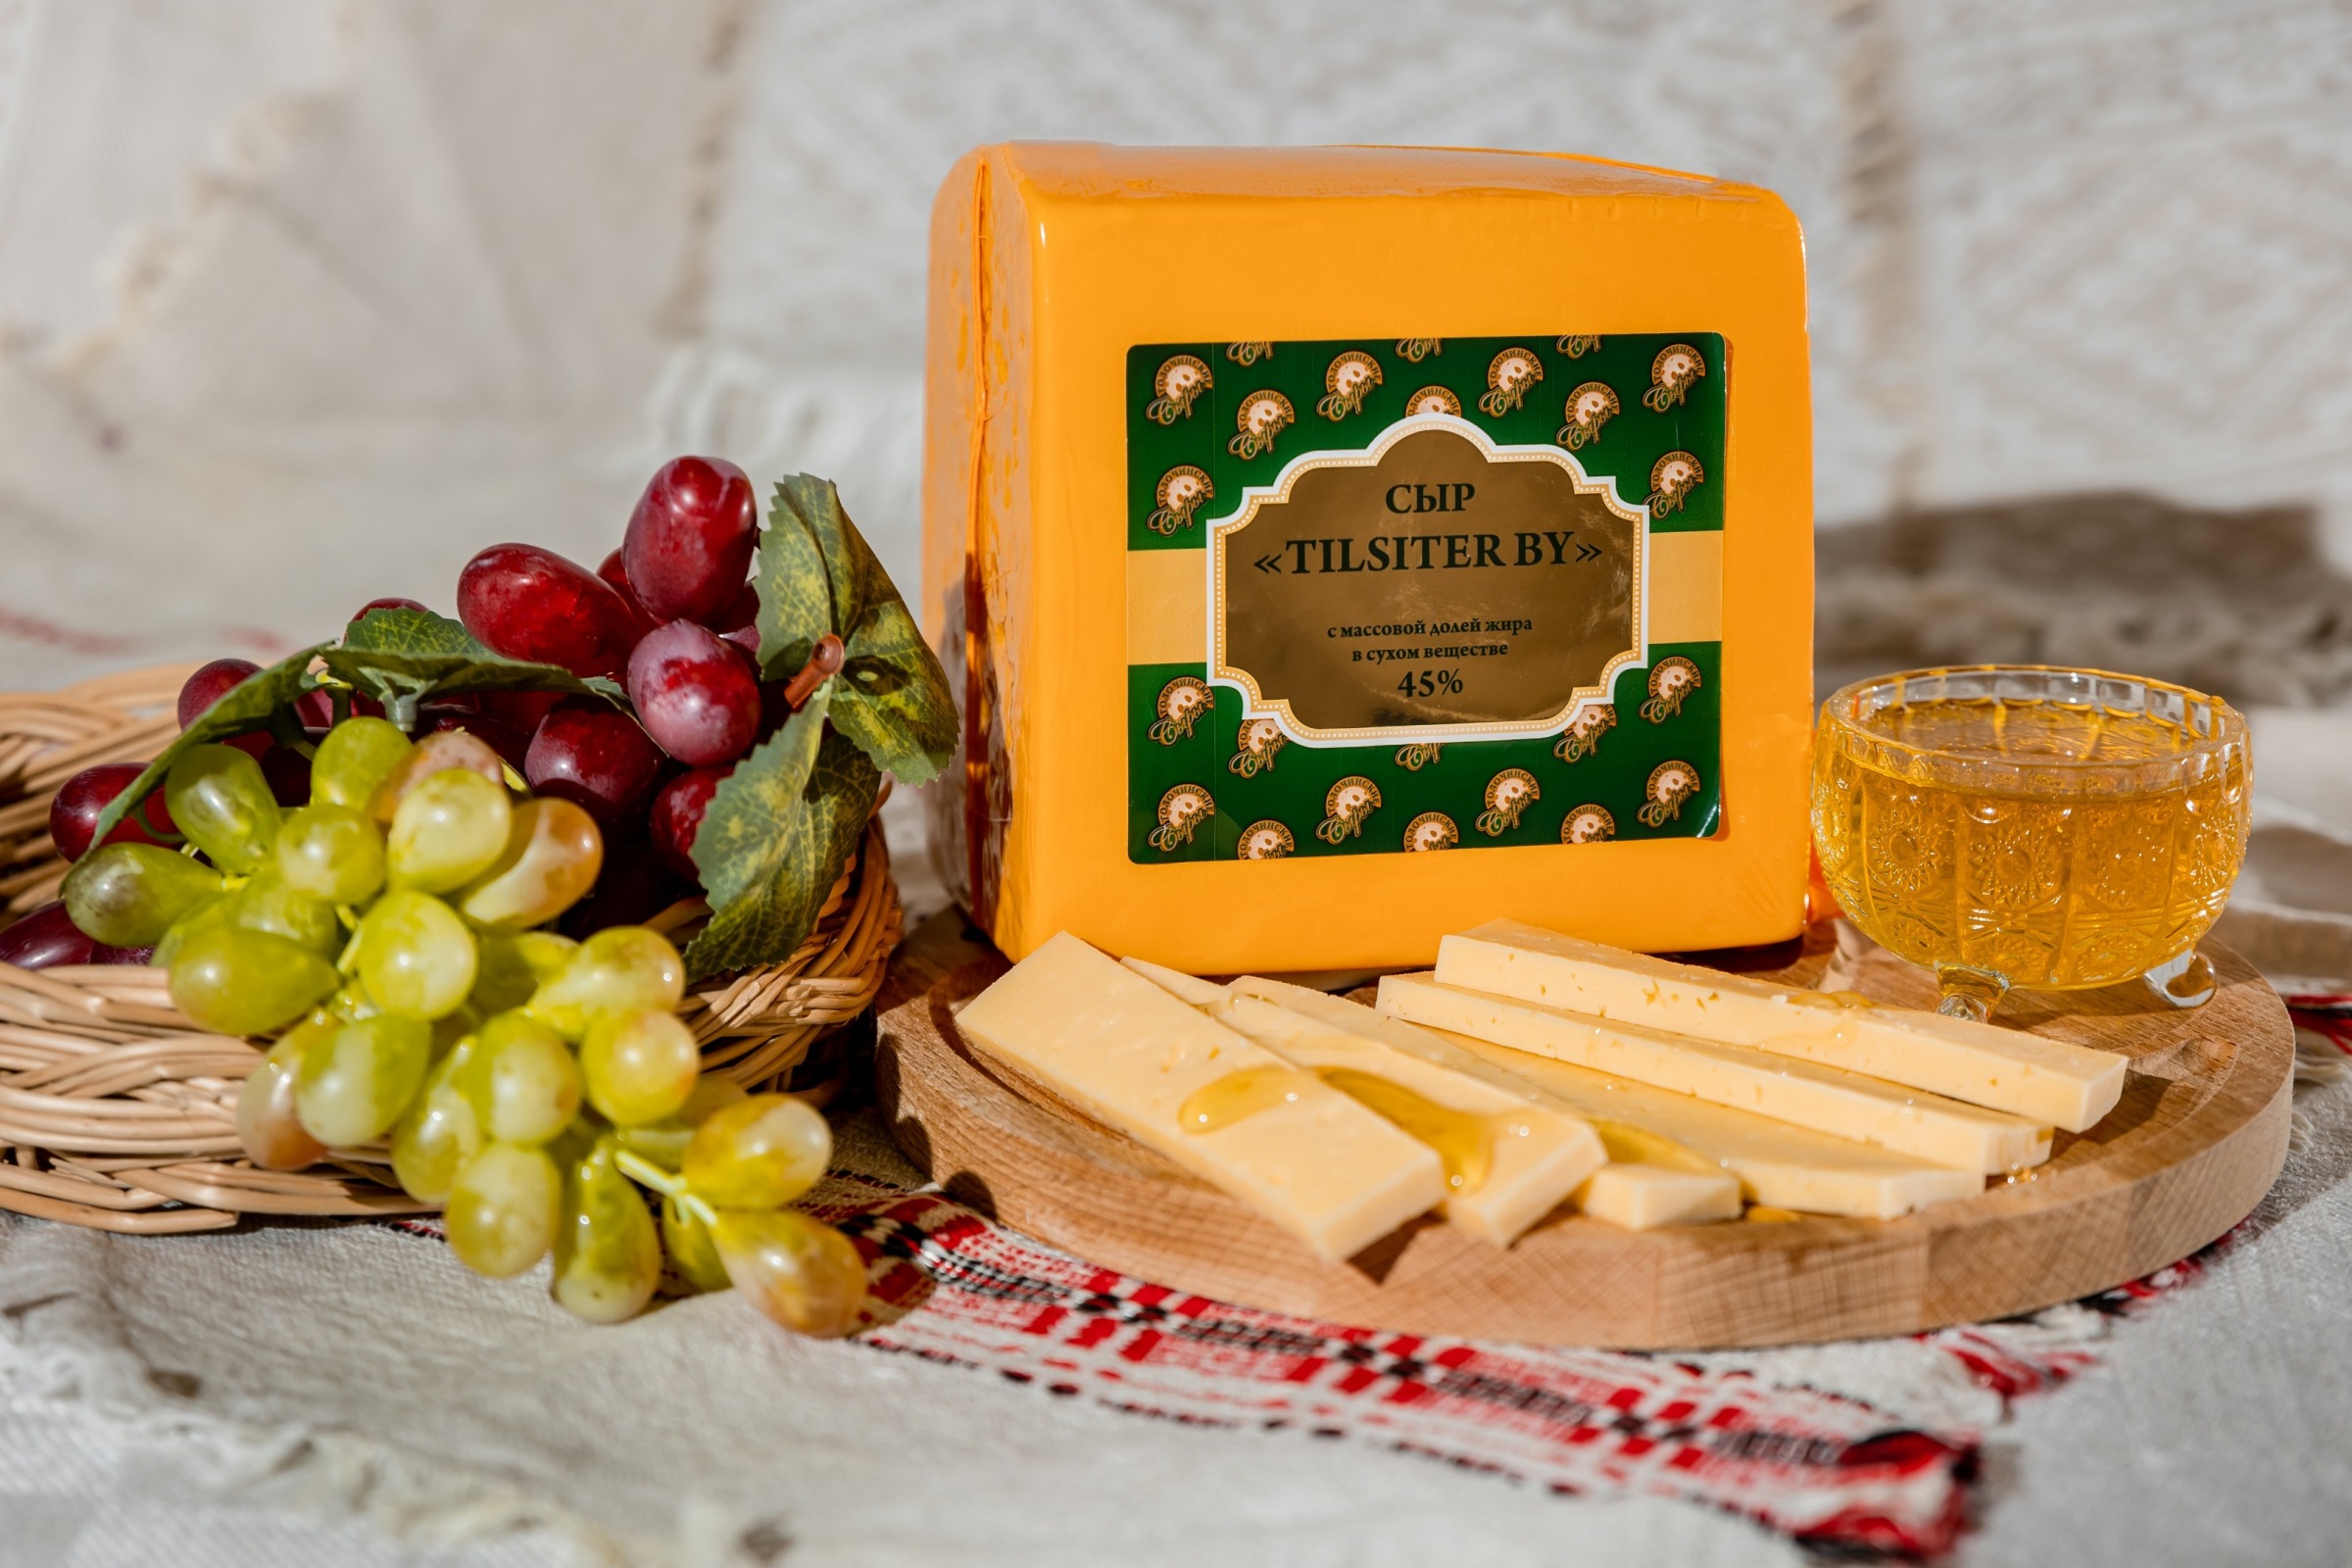 Сыр TILSITER BY (кубик)